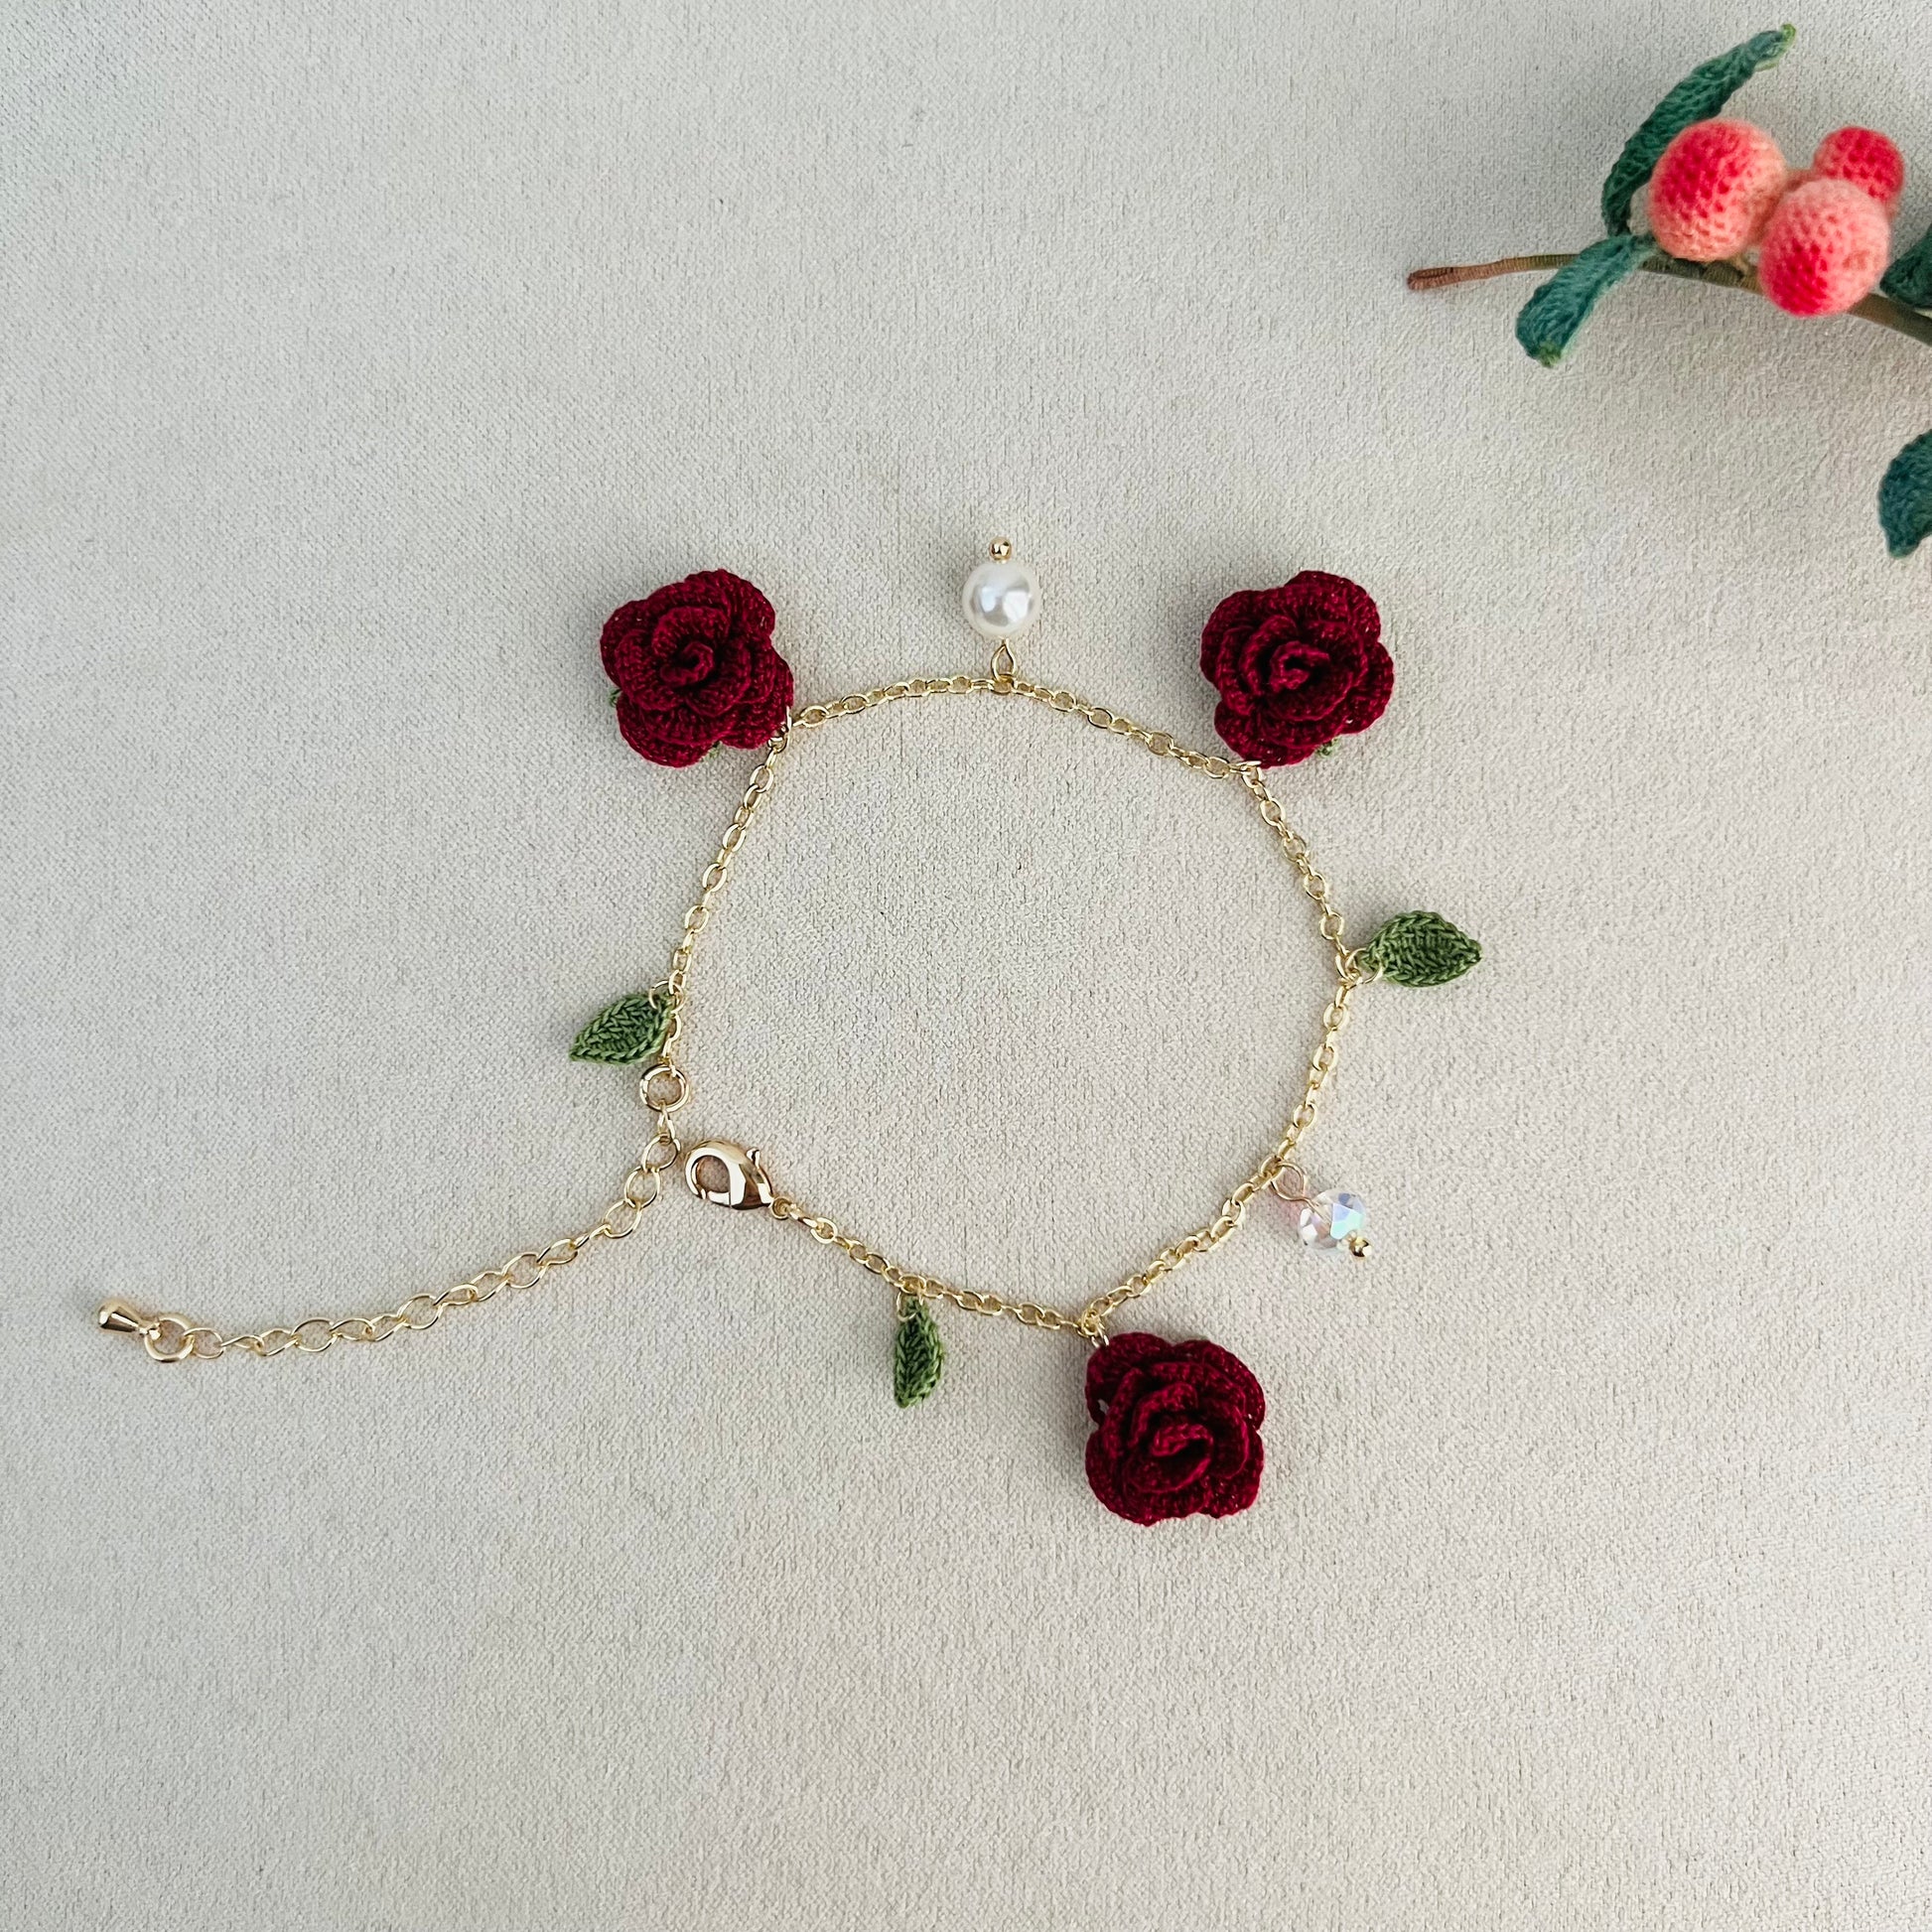 Micro Crochet Rose Bracelet